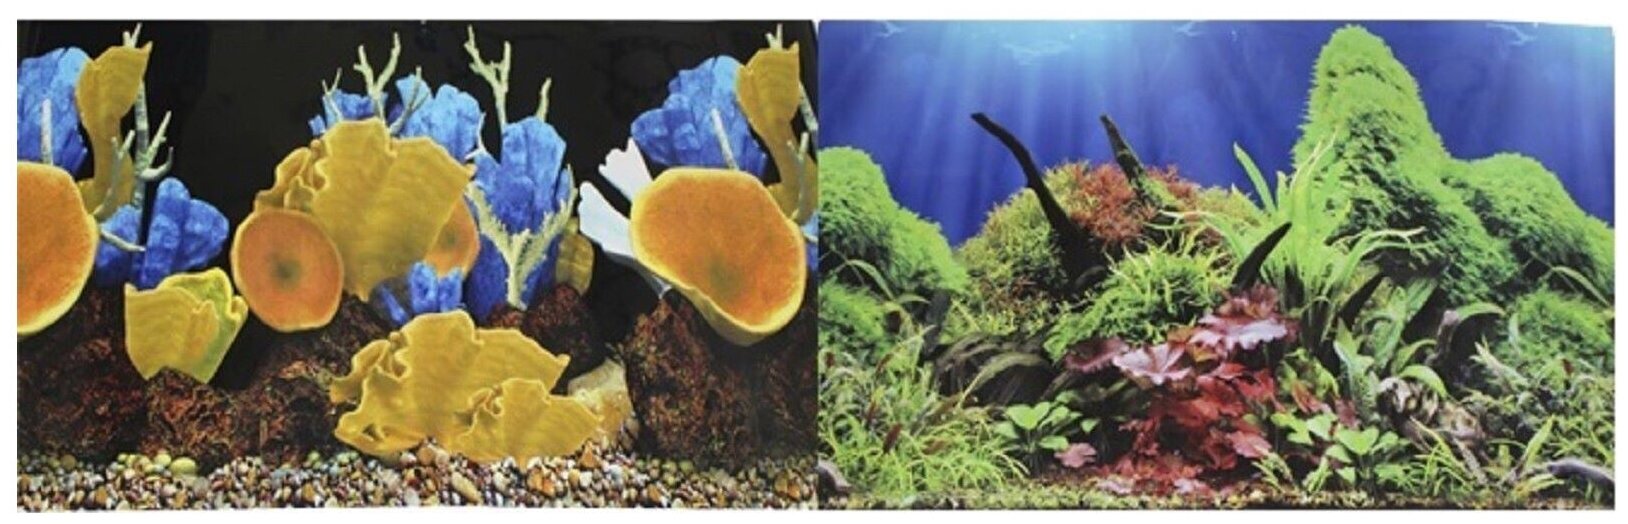 Фон для аквариума Prime Морские кораллы/Подводный мир 30х60см